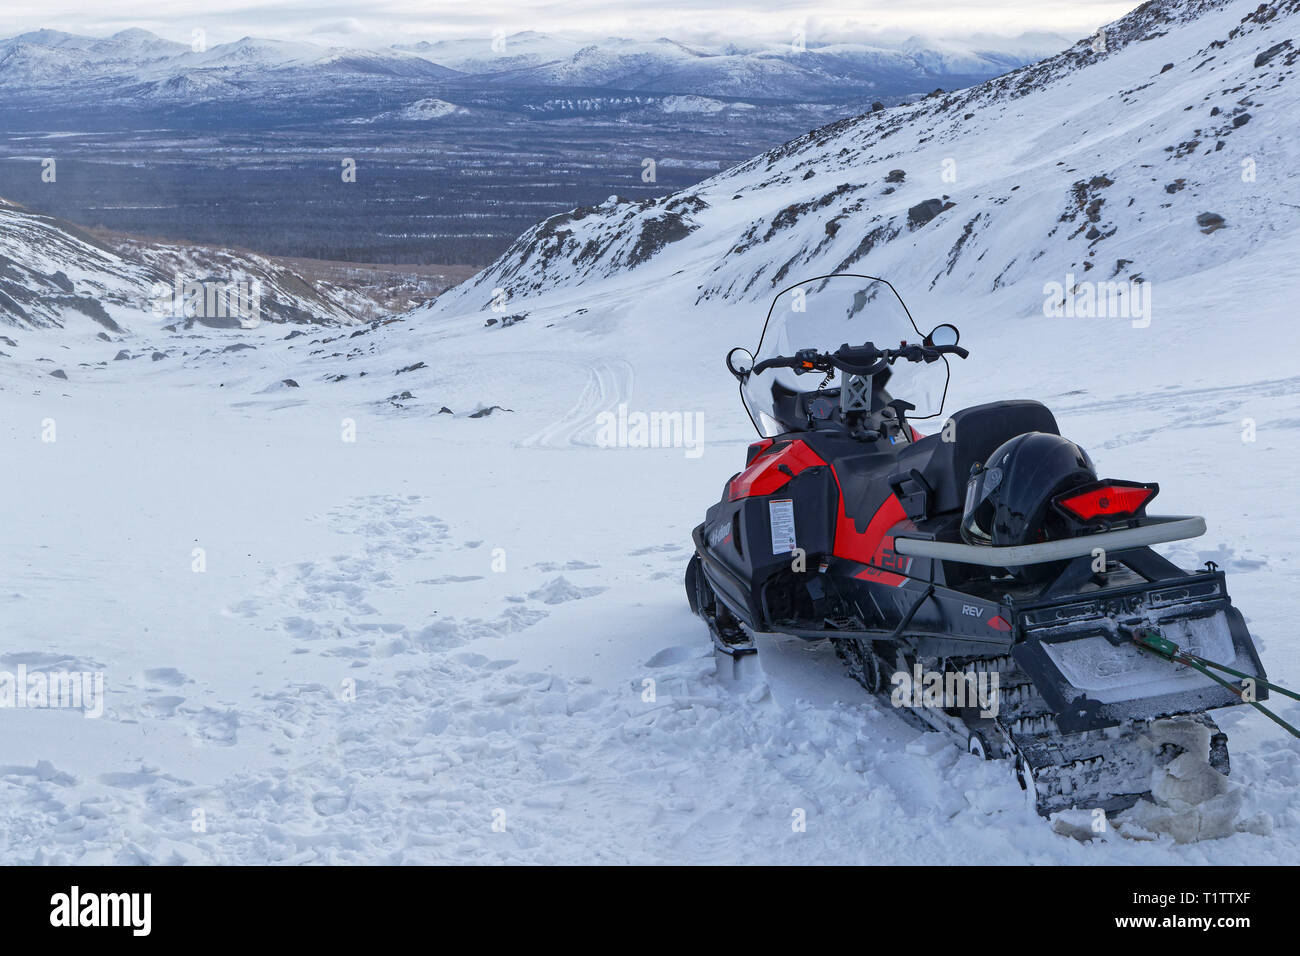 HAINES JUNCTION, Yukon, Kanada, 12. März 2019: Reise sind auf eisfeldern mit Schneemobilen organisiert. Stockfoto